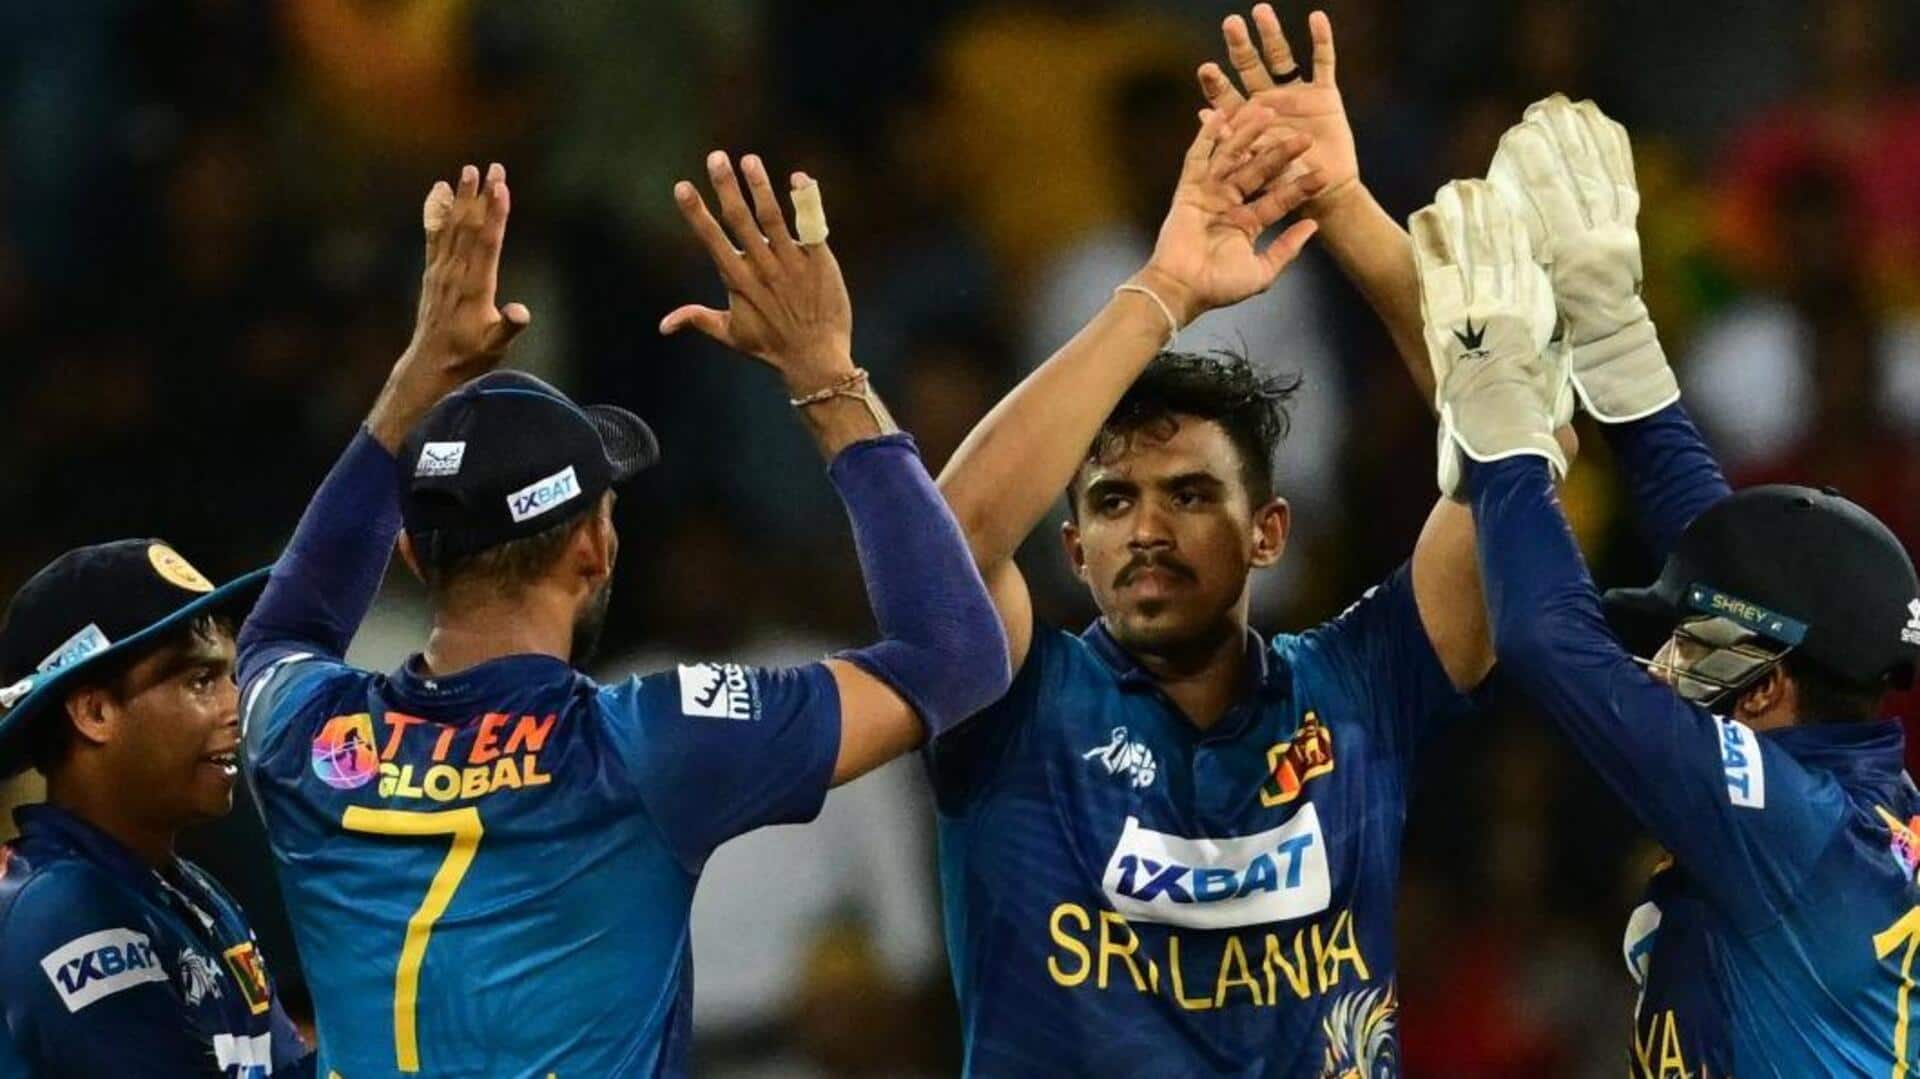 एशिया कप: श्रीलंका ने पाकिस्तान को हराकर फाइनल में किया प्रवेश, भारत से होगा खिताबी मुकाबला